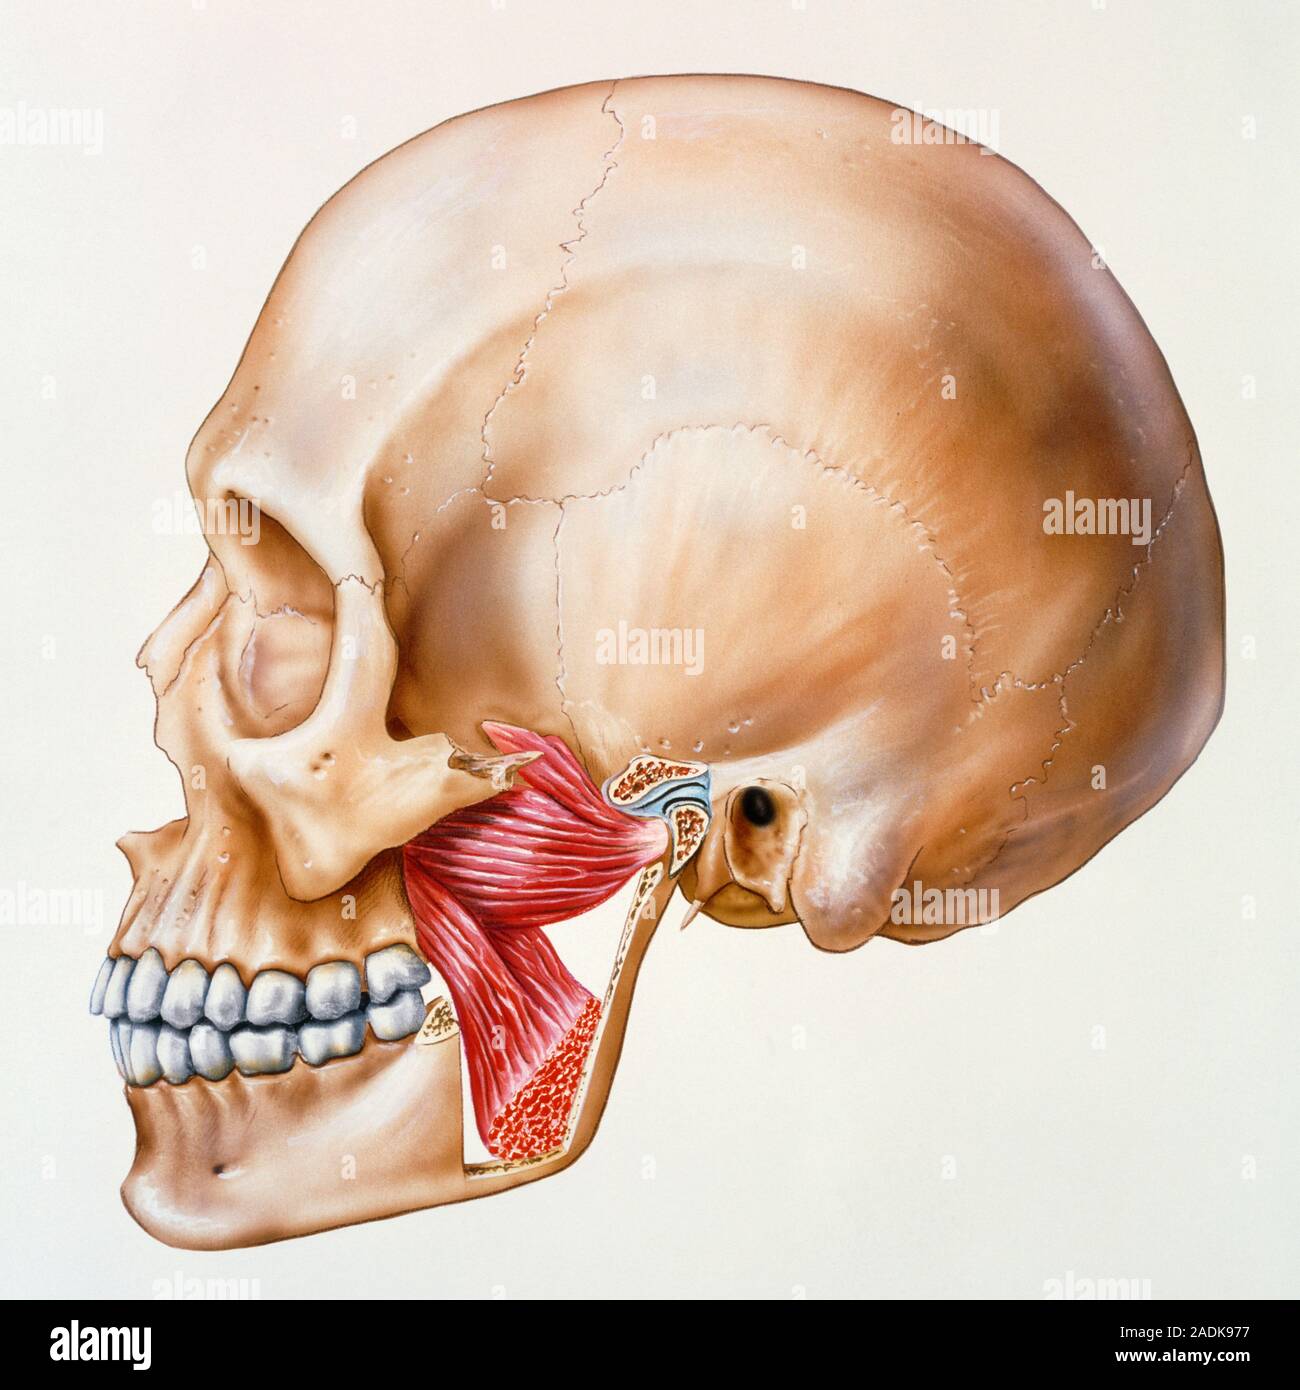 Подвижное соединение челюстей. Медиальная крыловидная мышца челюсти. Крыловидные мышцы челюсти анатомия. Жевательные мышцы челюсти анатомия. Череп анатомия нижнечелюстной сустав.